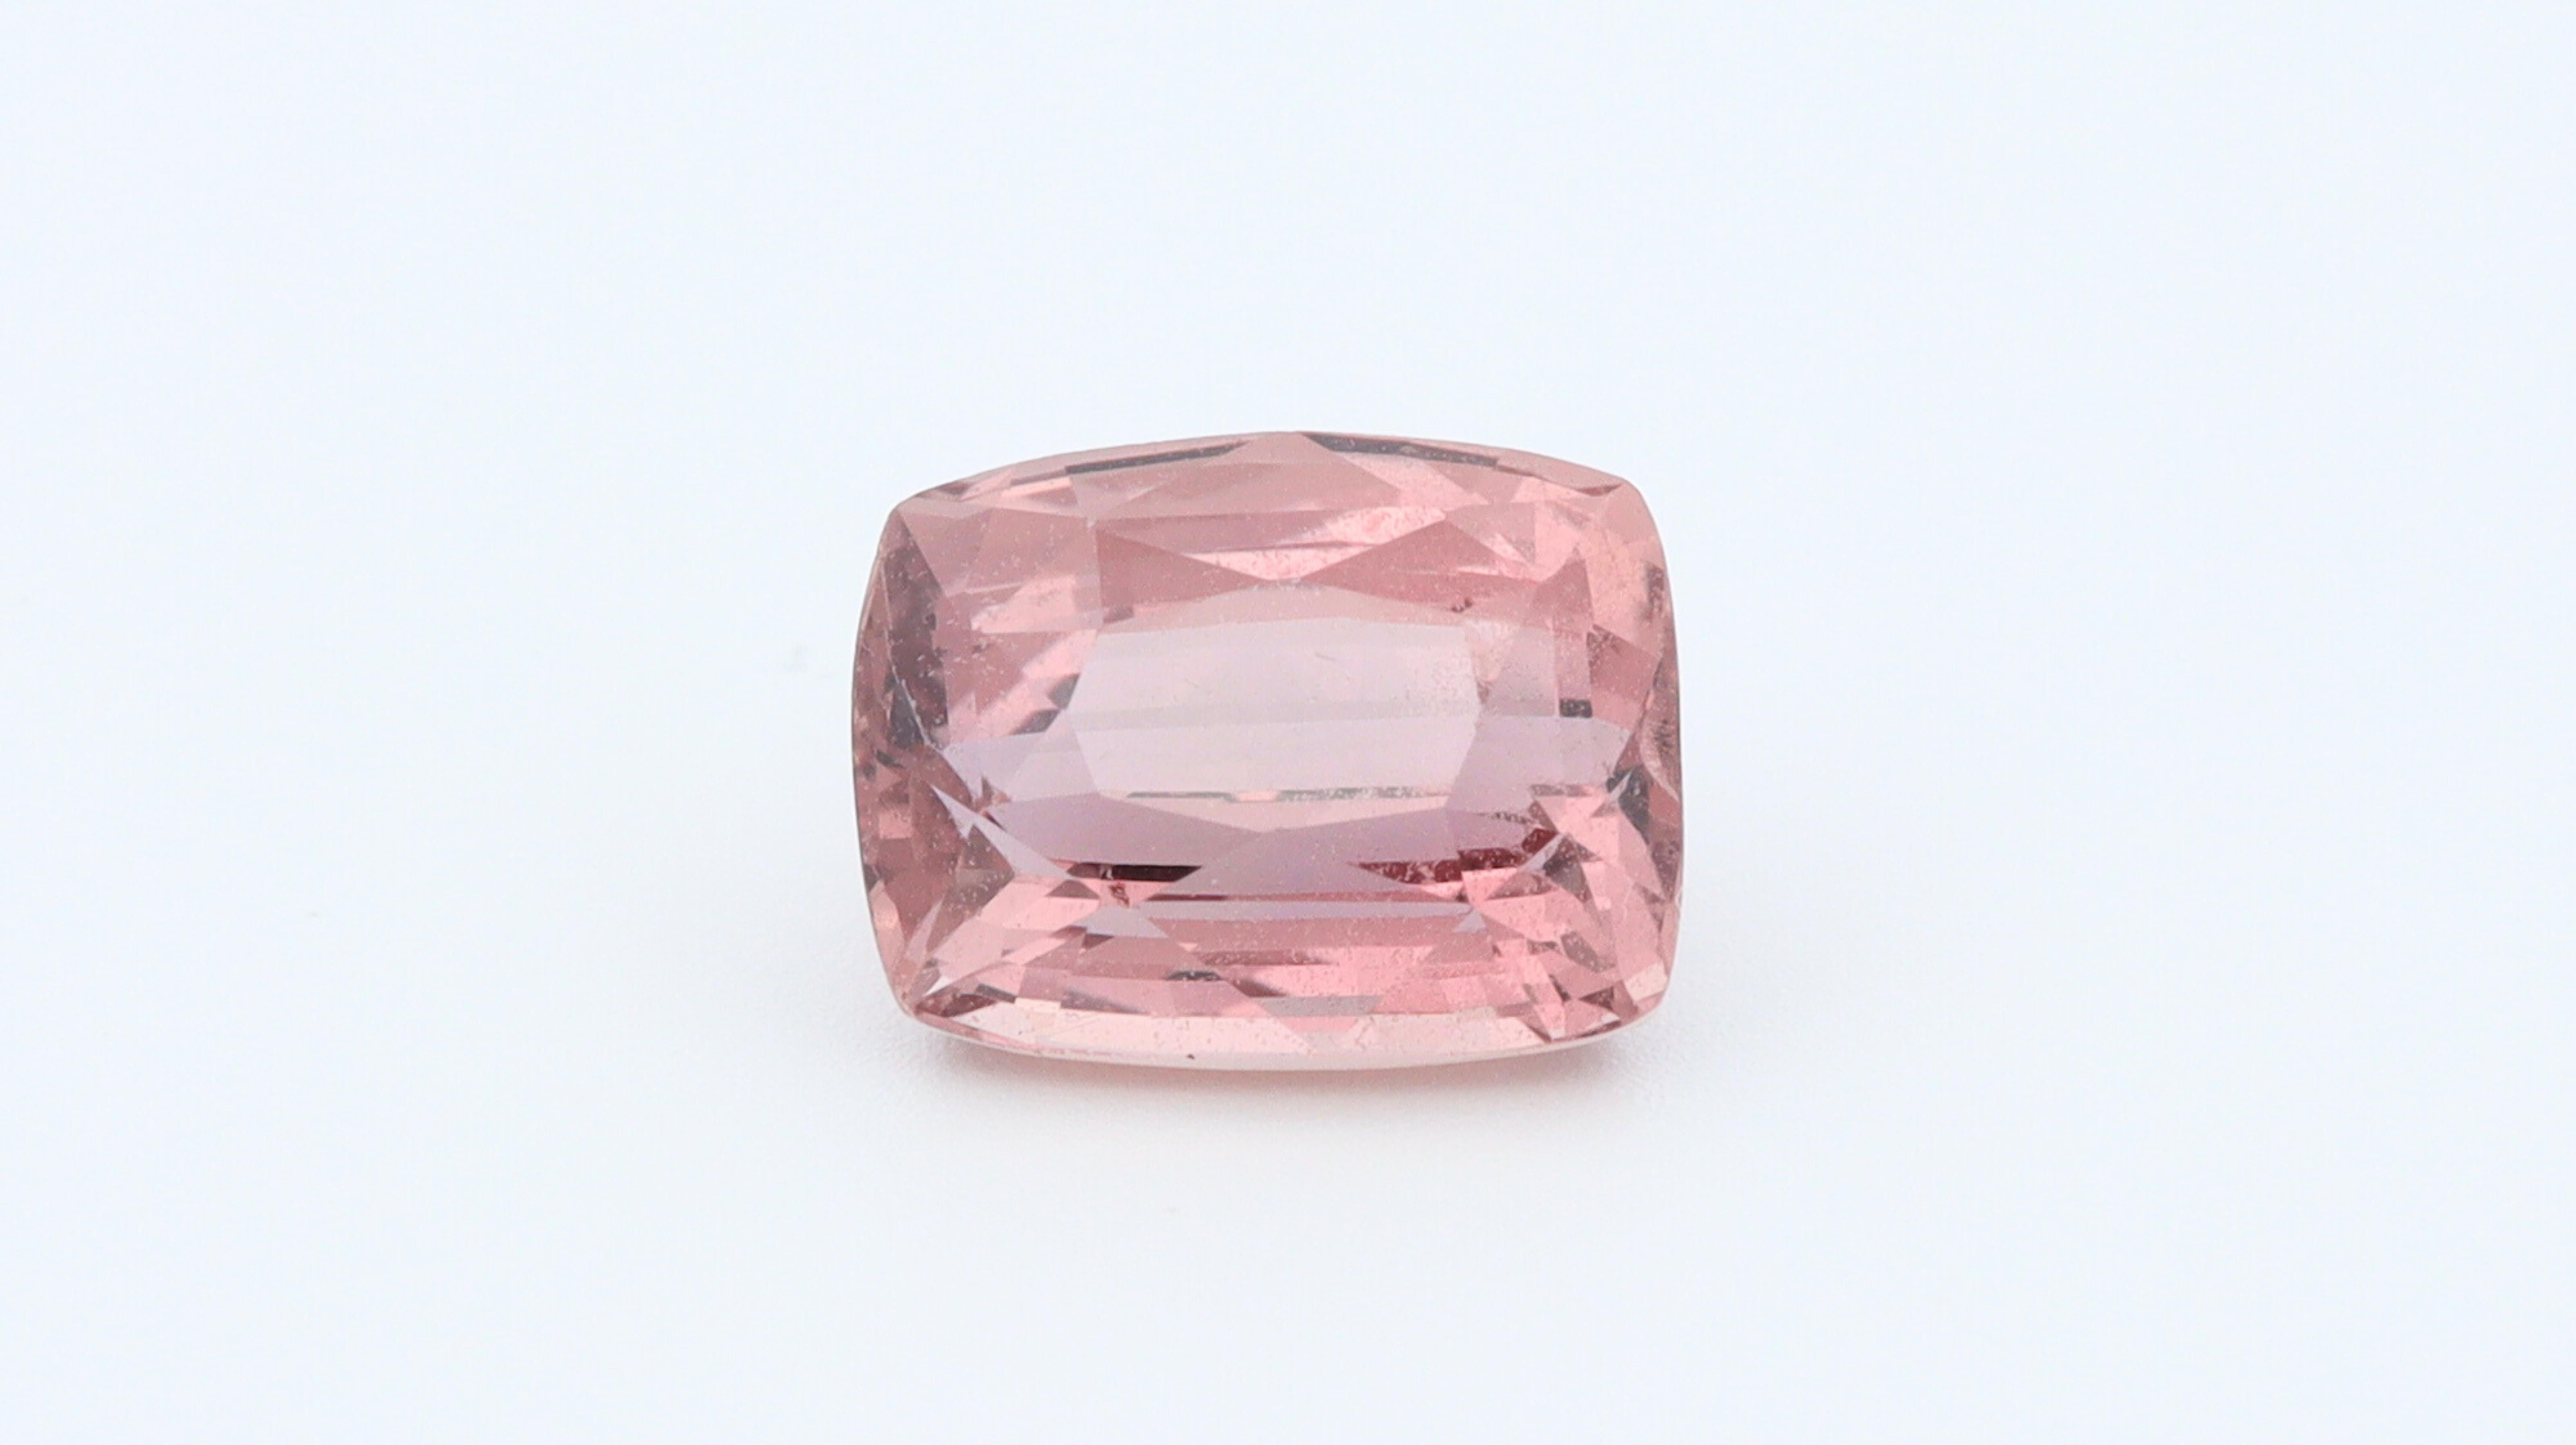 Schöner Stein aus Sri Lanka, der keiner Behandlung unterzogen wurde und eine rosafarbene Farbe mit ausgezeichneter Sättigung und Farbton aufweist.  Es war kissenförmig geschnitten, gut proportioniert und an der länglichen Seite mit einer guten